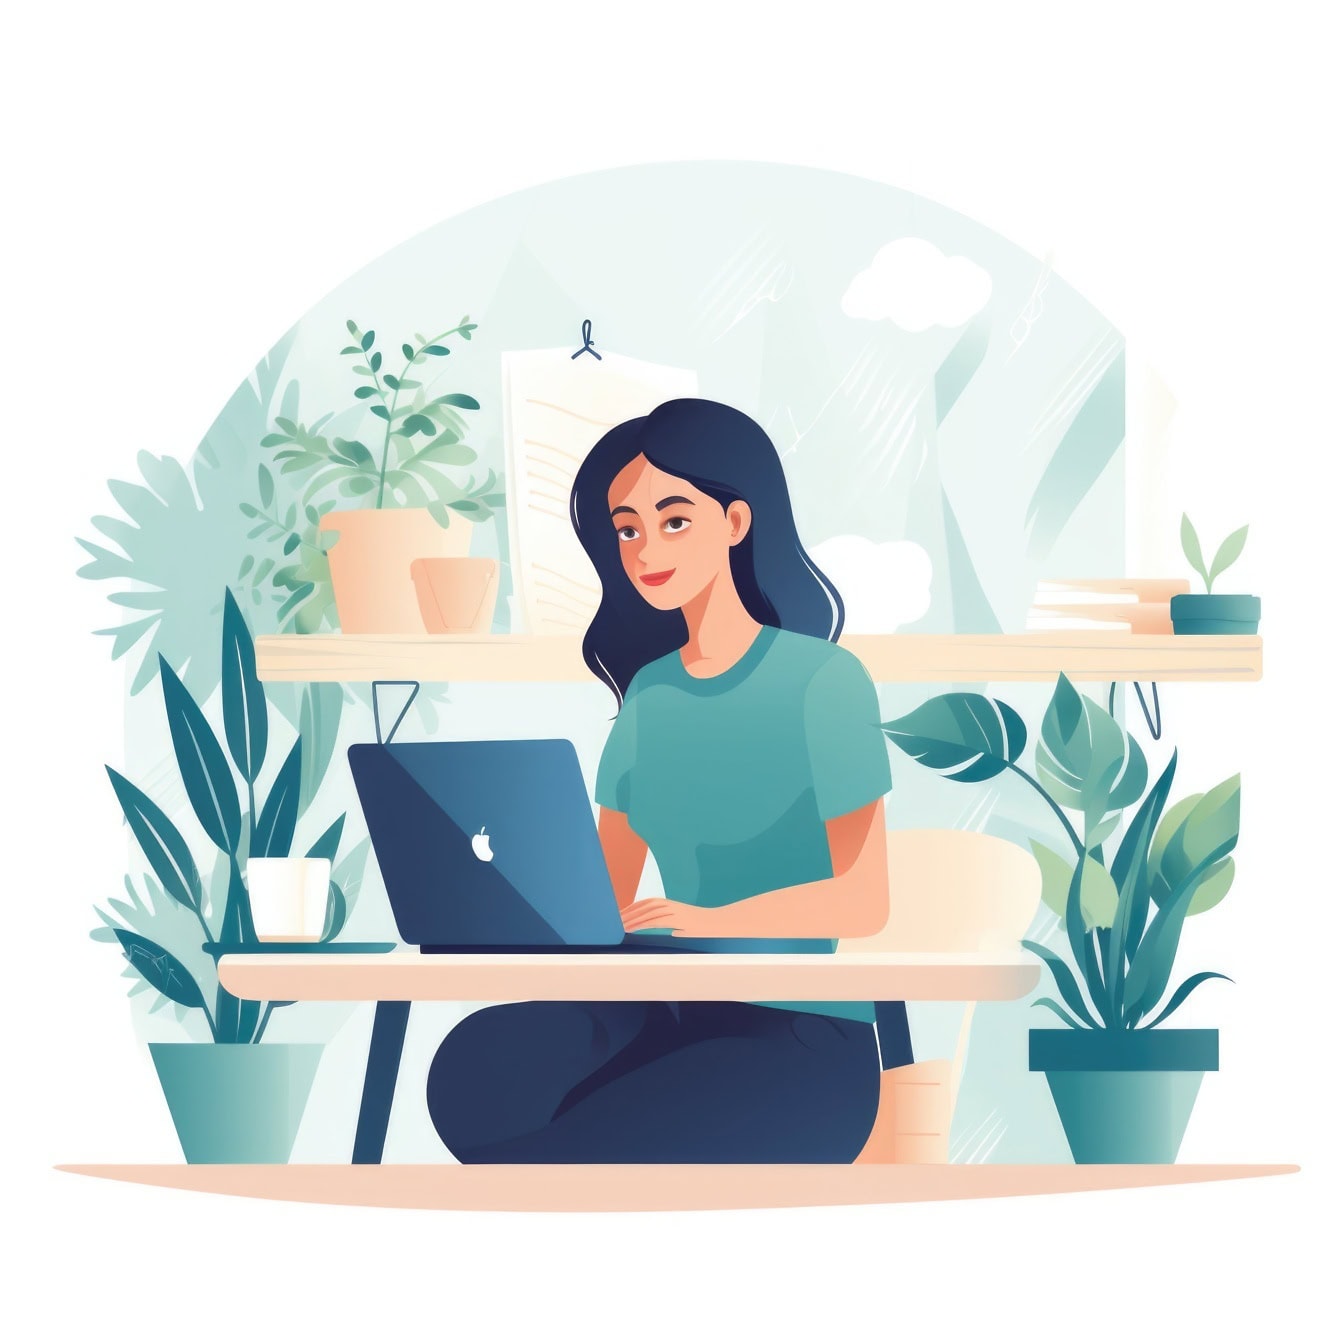 Egy nő grafikus ábrázolása, aki otthonában egy íróasztalnál ül, és szabadúszóként dolgozik Mackintosh laptopjával